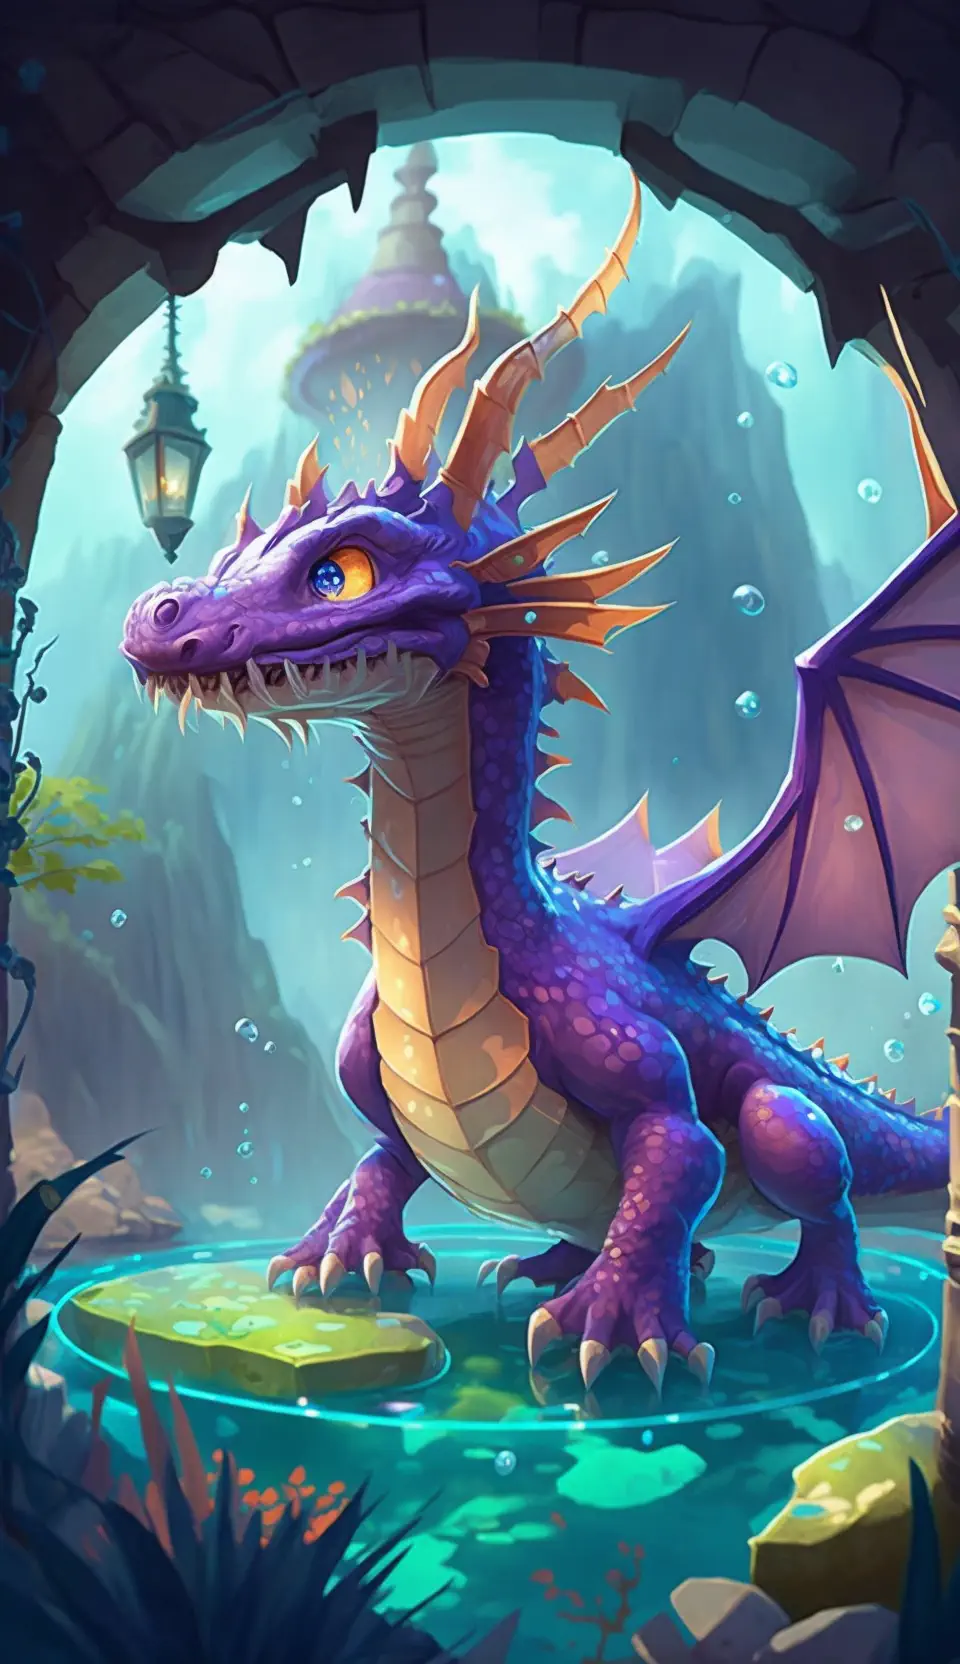 Drakon0_Spyro_the_dragon_with_spread_wings_and_aquarium_in_back_e4d32047-e2f4-433e-8089-c7f47fad03c3